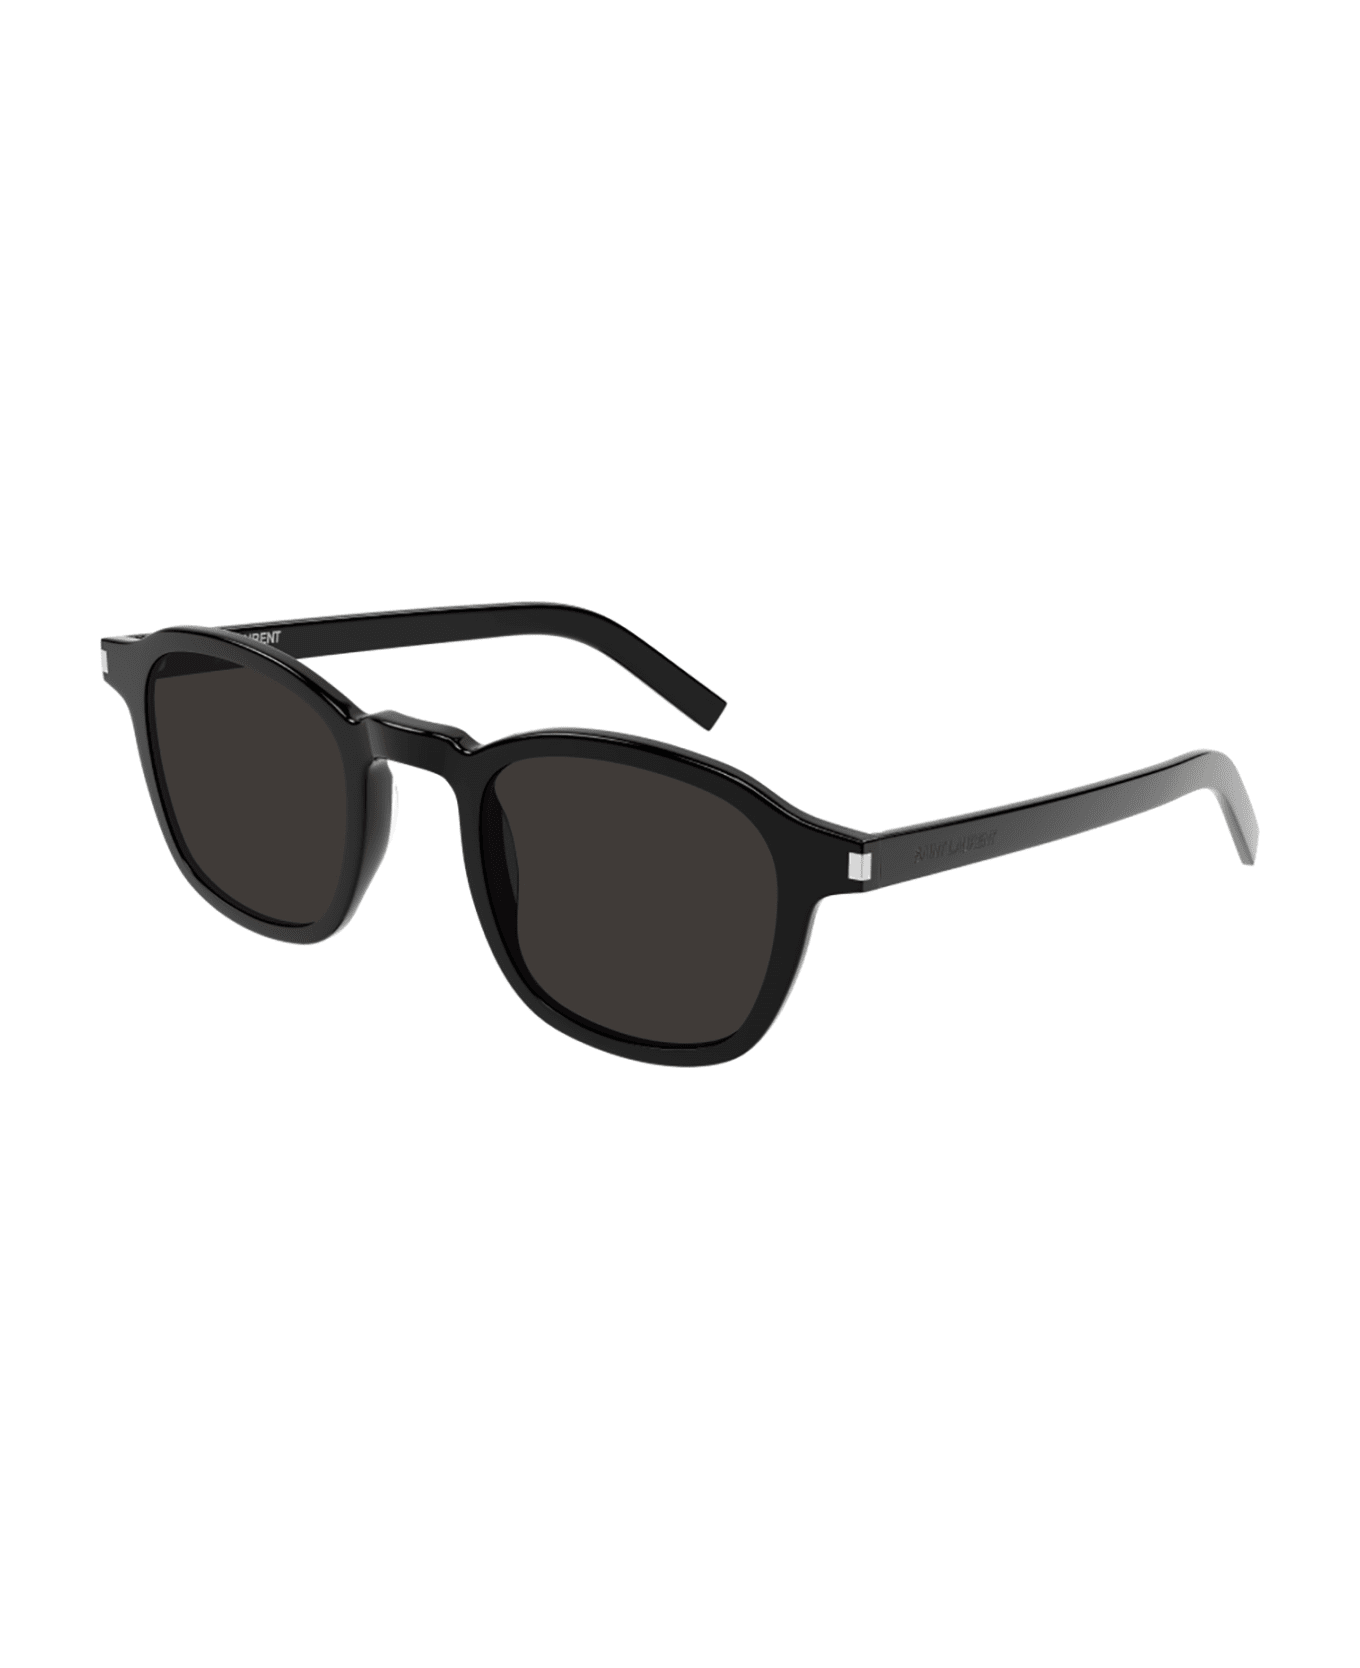 Saint Laurent Eyewear 1e5n4id0a - s CC comb-shaped favourites sunglasses